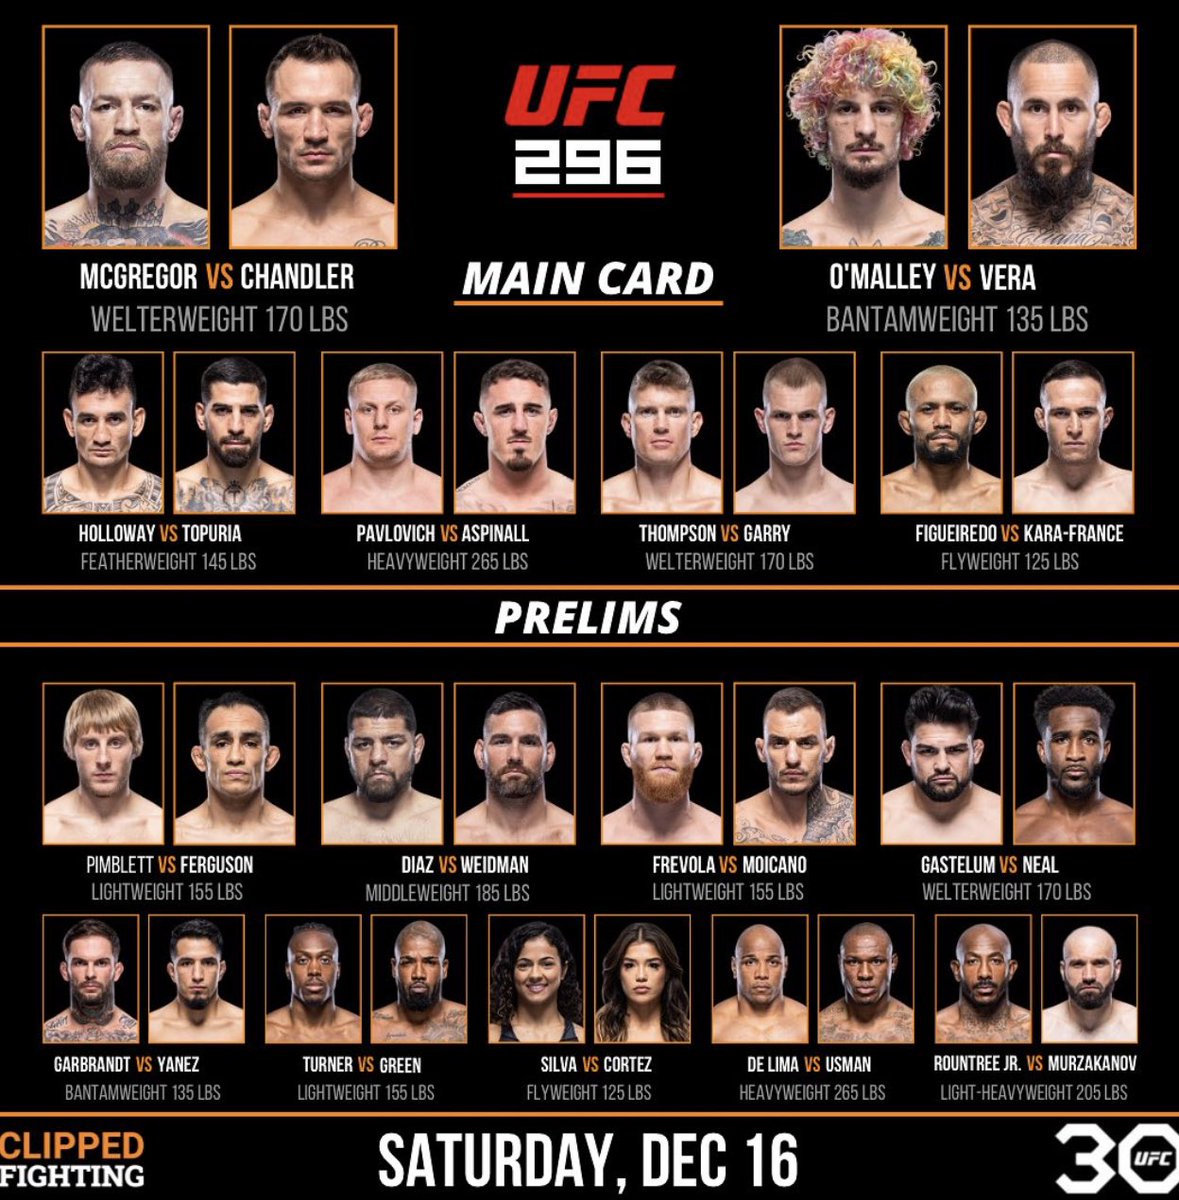 UFC 296 Fight Card 🔥 (unofficial) 

#UFC #UFC296 #MMATwitter